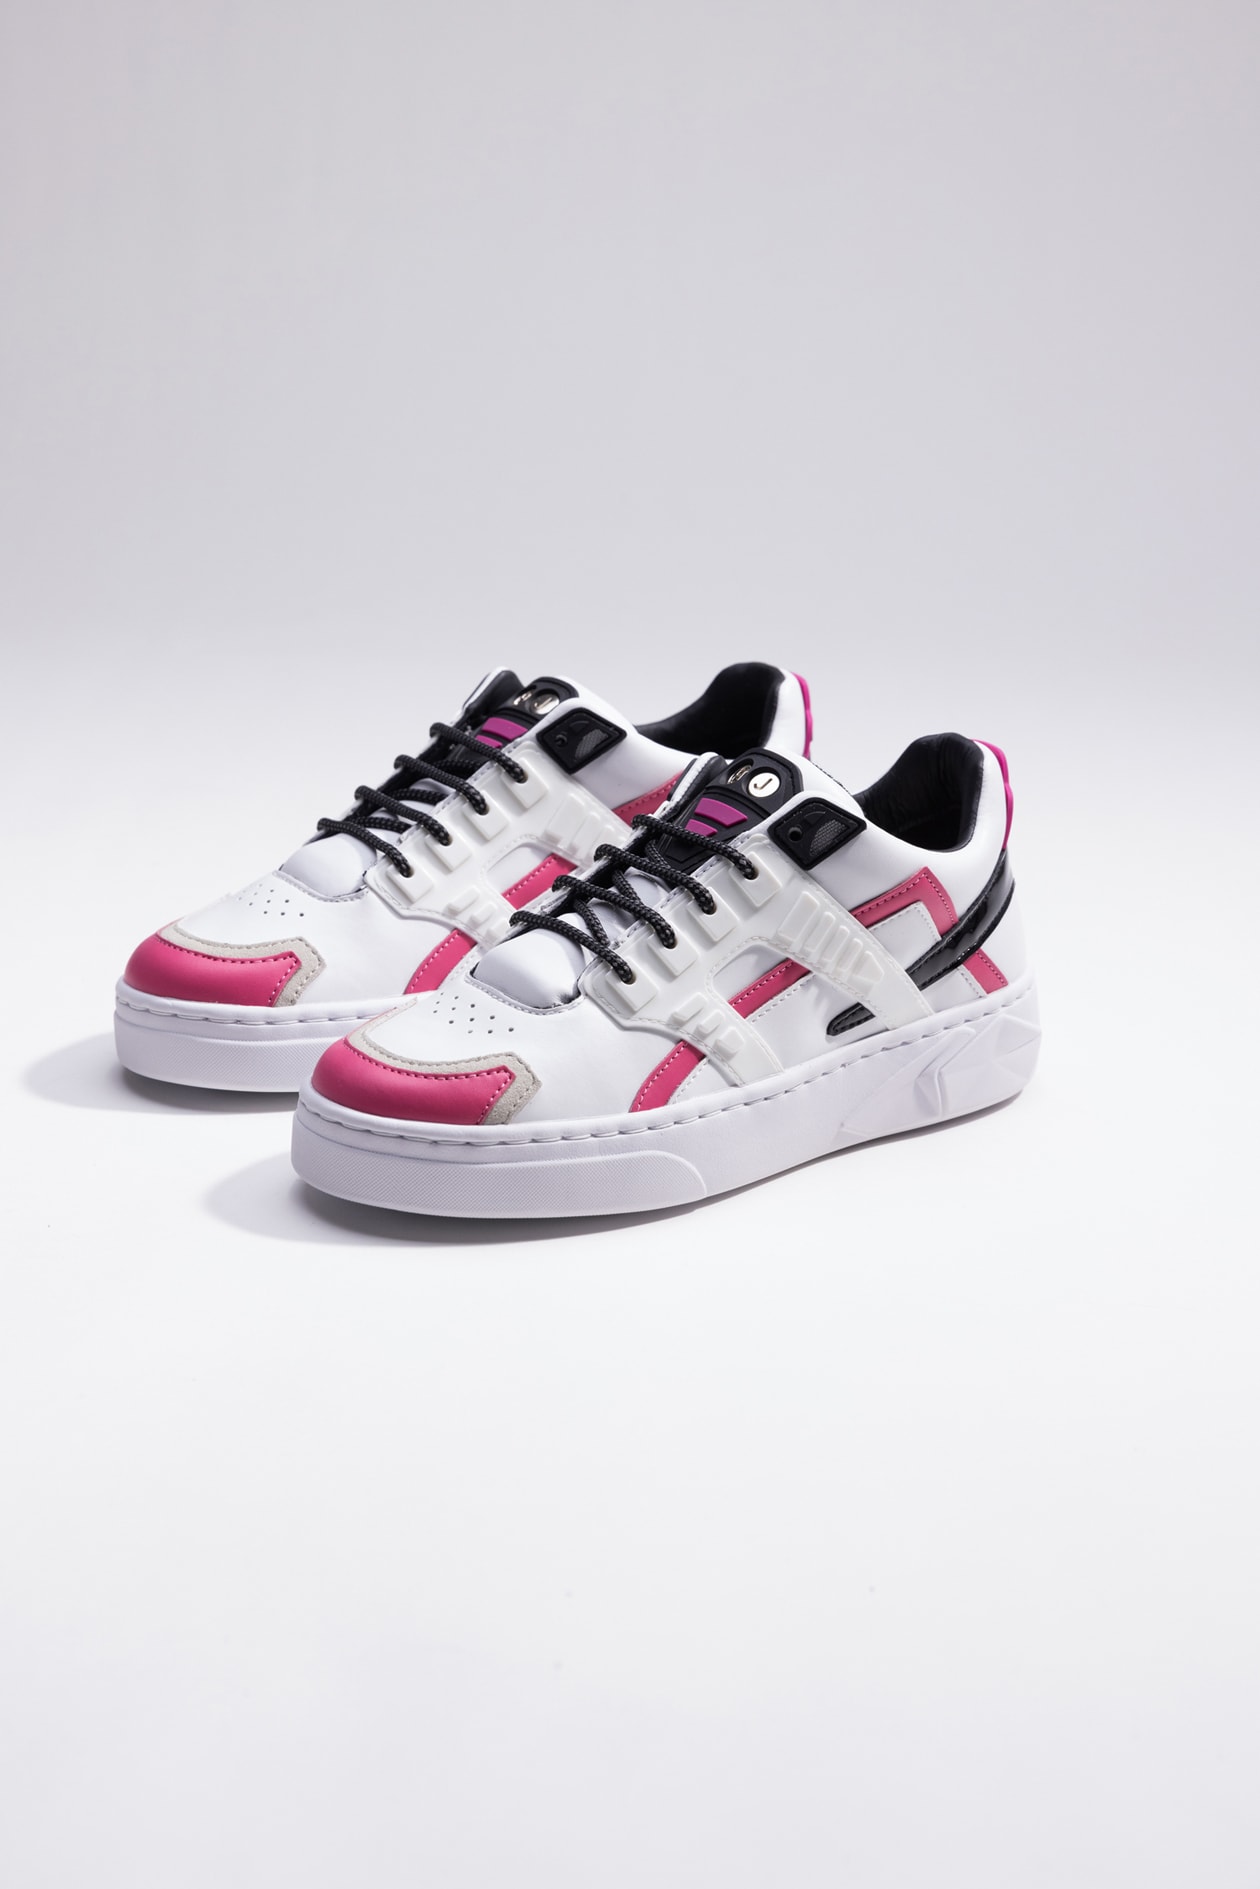 Hide & Jack Low Top Sneaker - Mini Silverstone Pink White